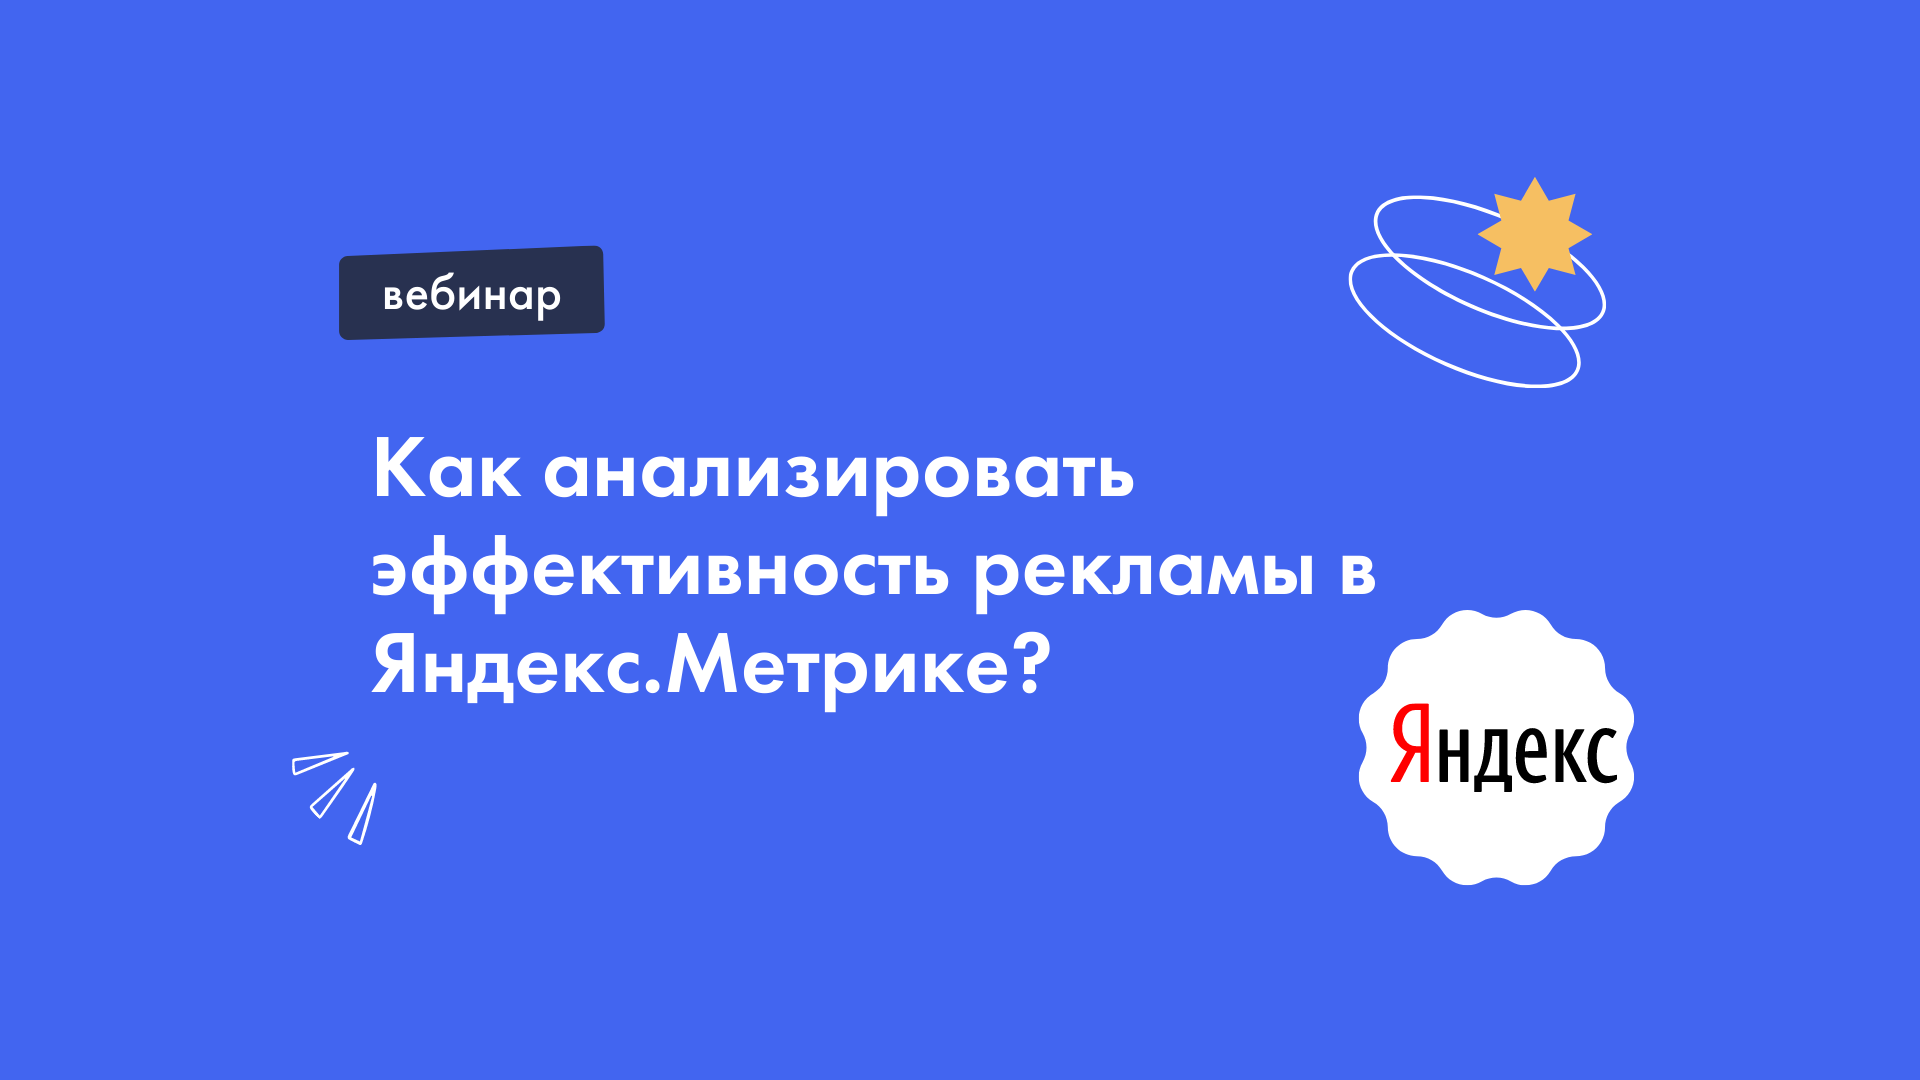 Как анализировать эффективность рекламы в Яндекс.Метрике?